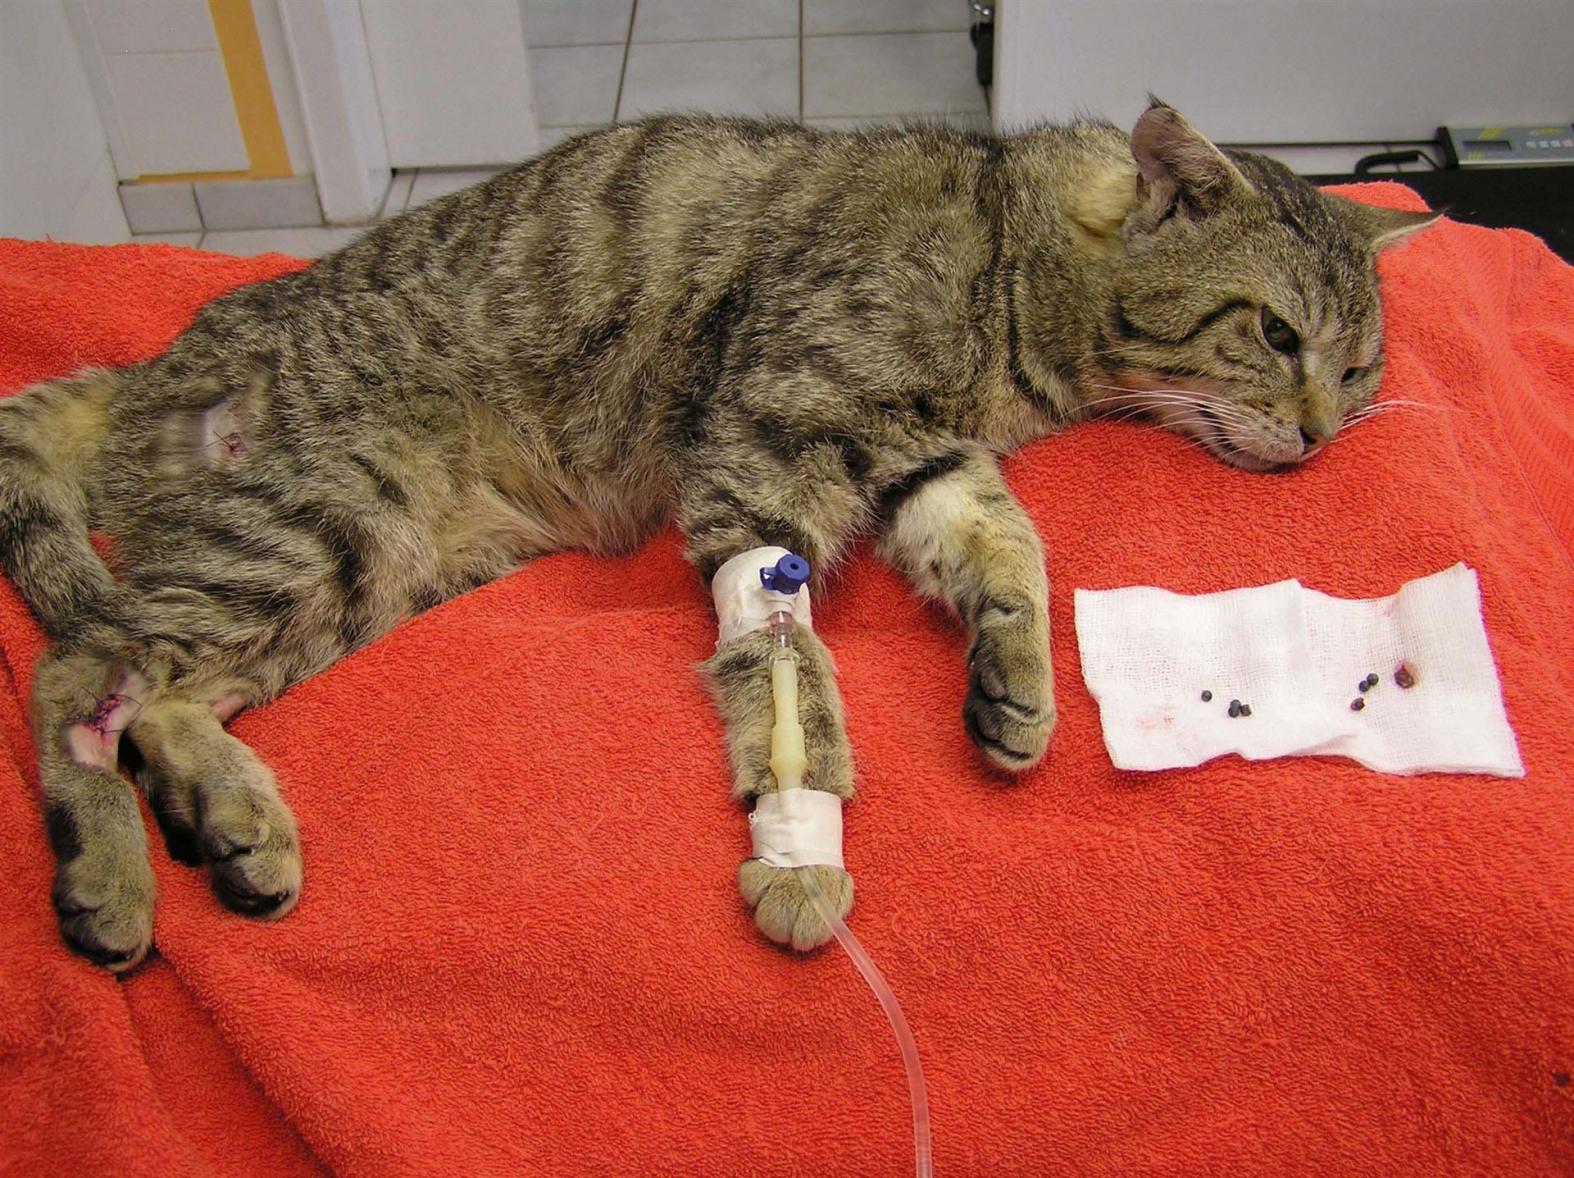 Ein Hobbyjäger hat mit giftigem Bleischrot auf eine Katze geschossen. 